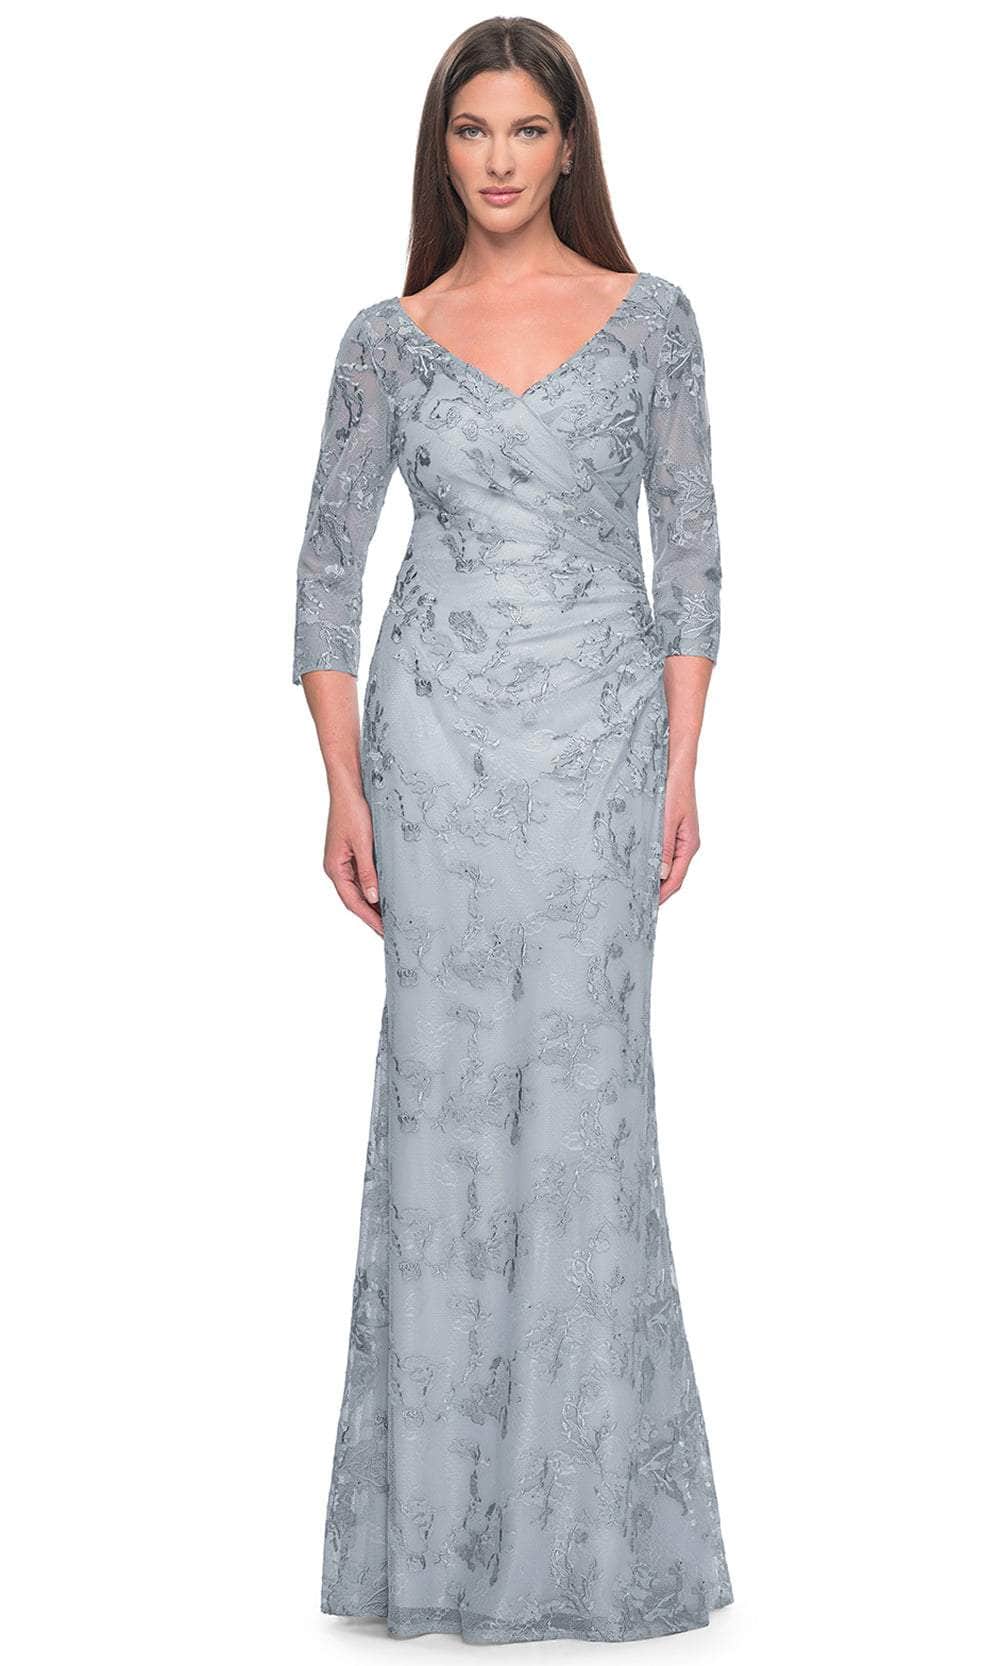 Image of La Femme 31684 - Pastel Lace Evening Dress